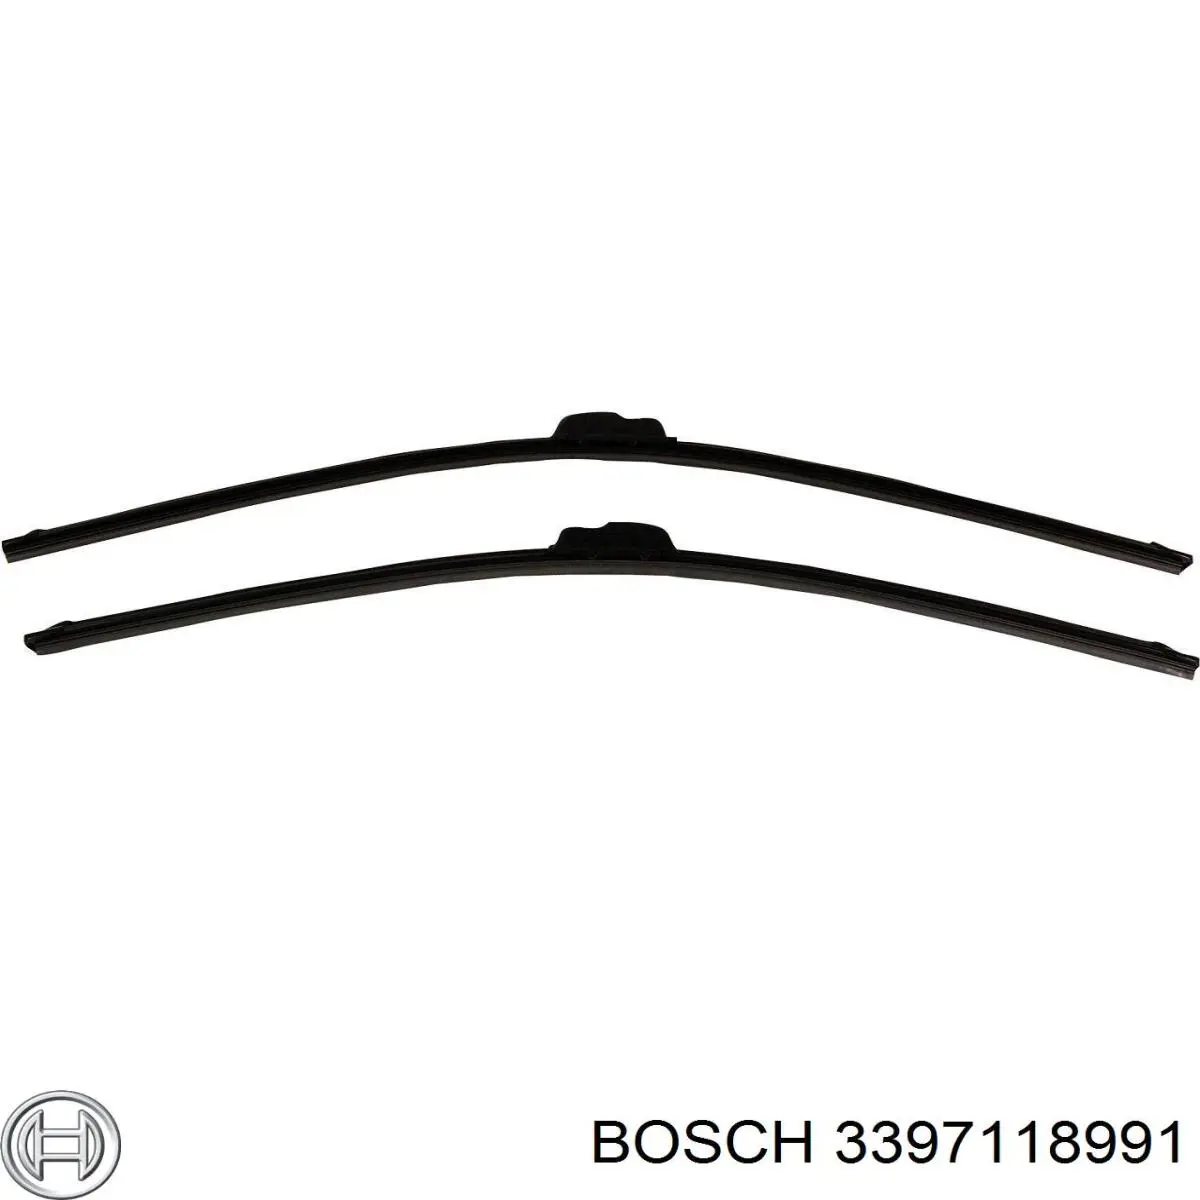 3397118991 Bosch limpiaparabrisas de luna delantera conductor